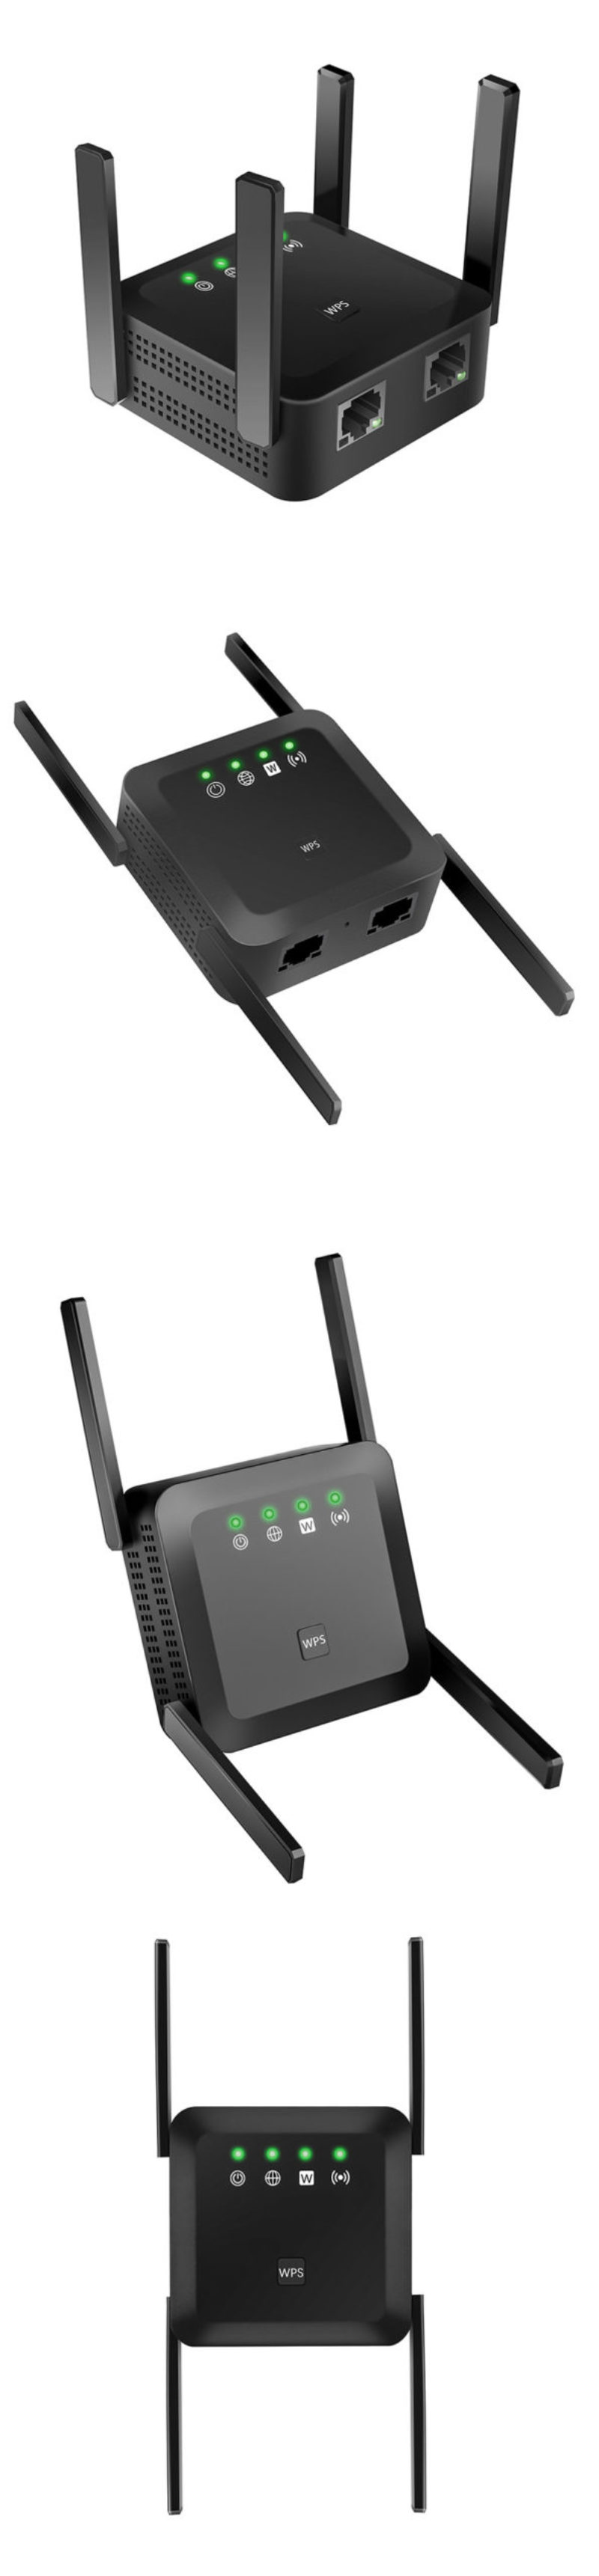 IM1200VN WiFi Repeater,WiFi Range Extender